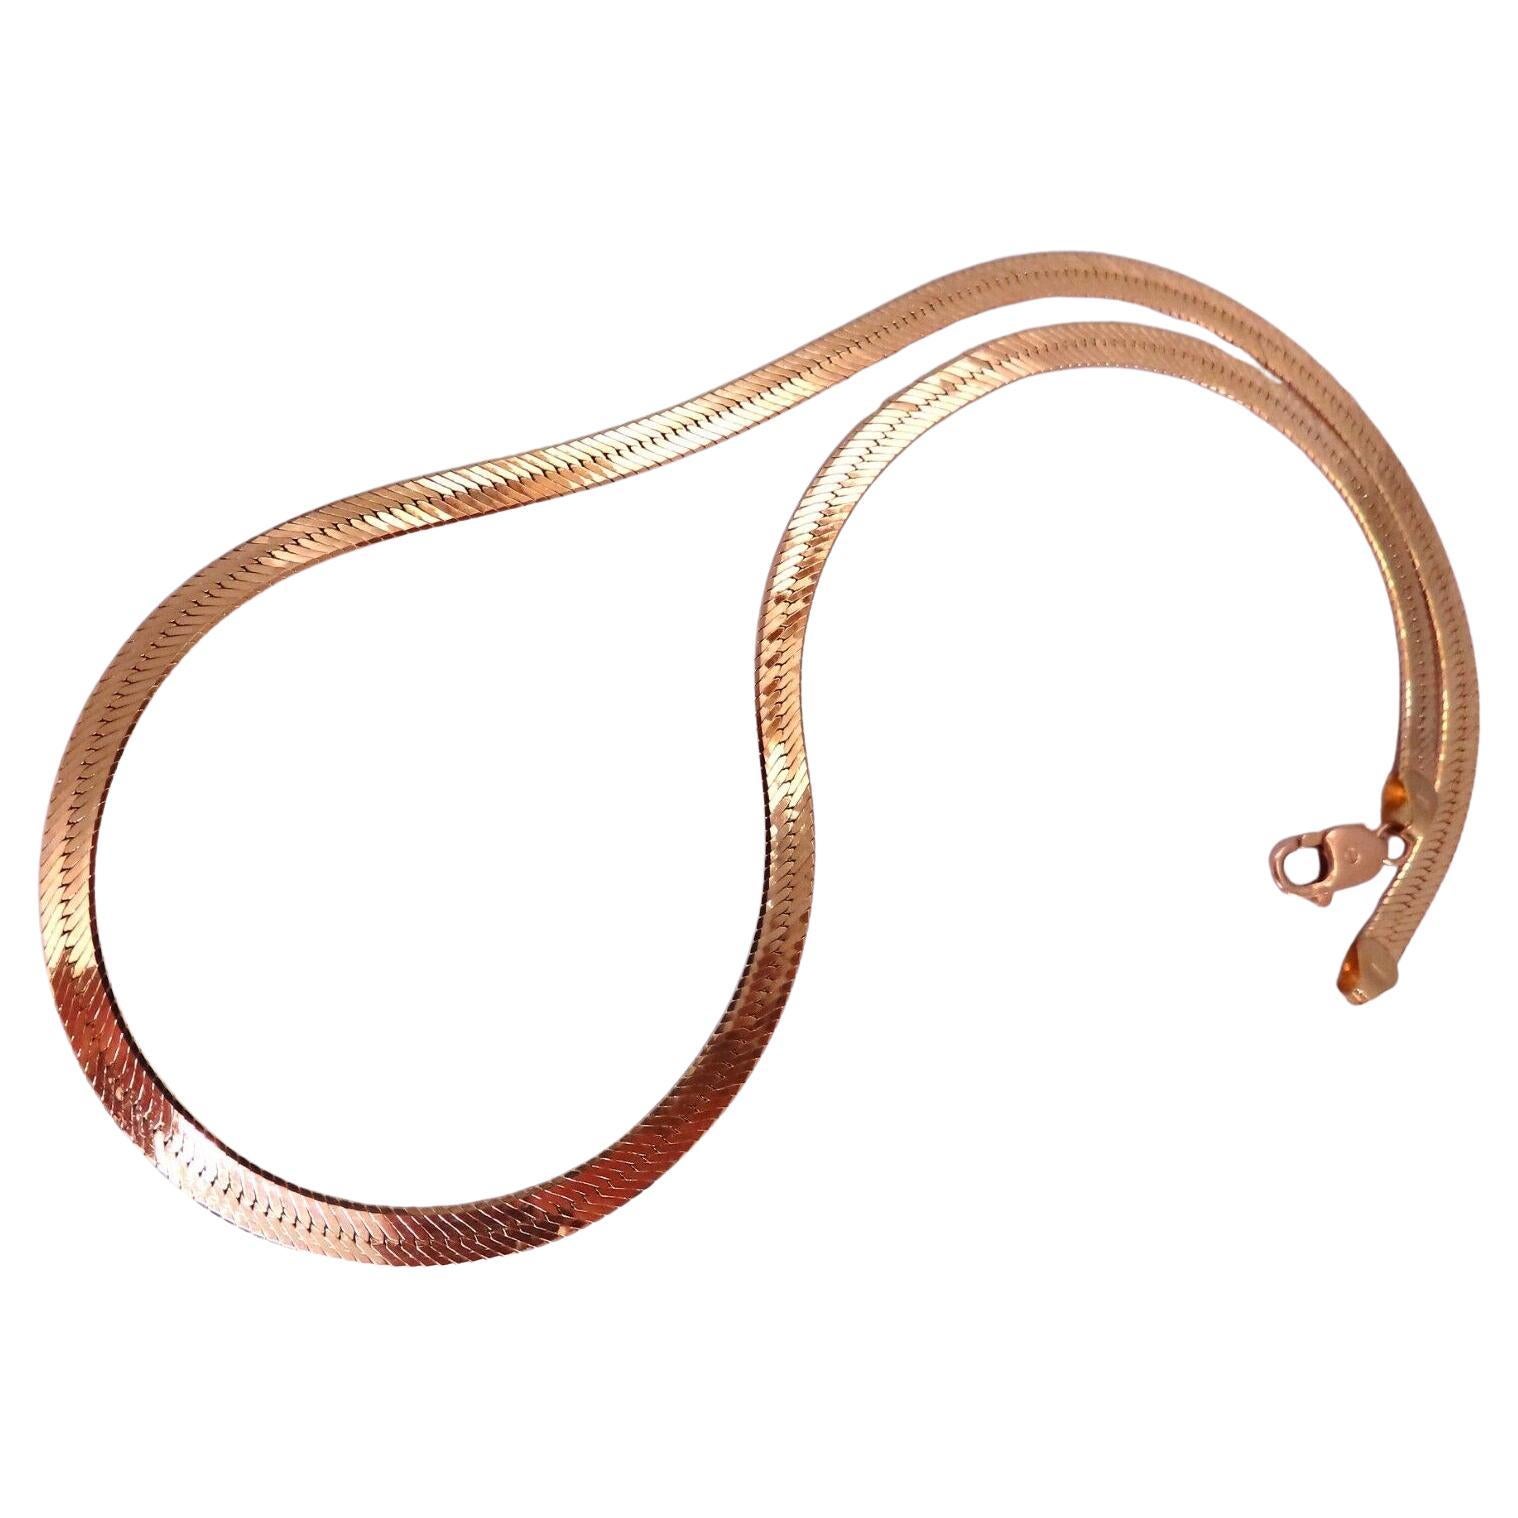 HerringBone Halskette 14kt Gold 4mm 11,8 Gramm